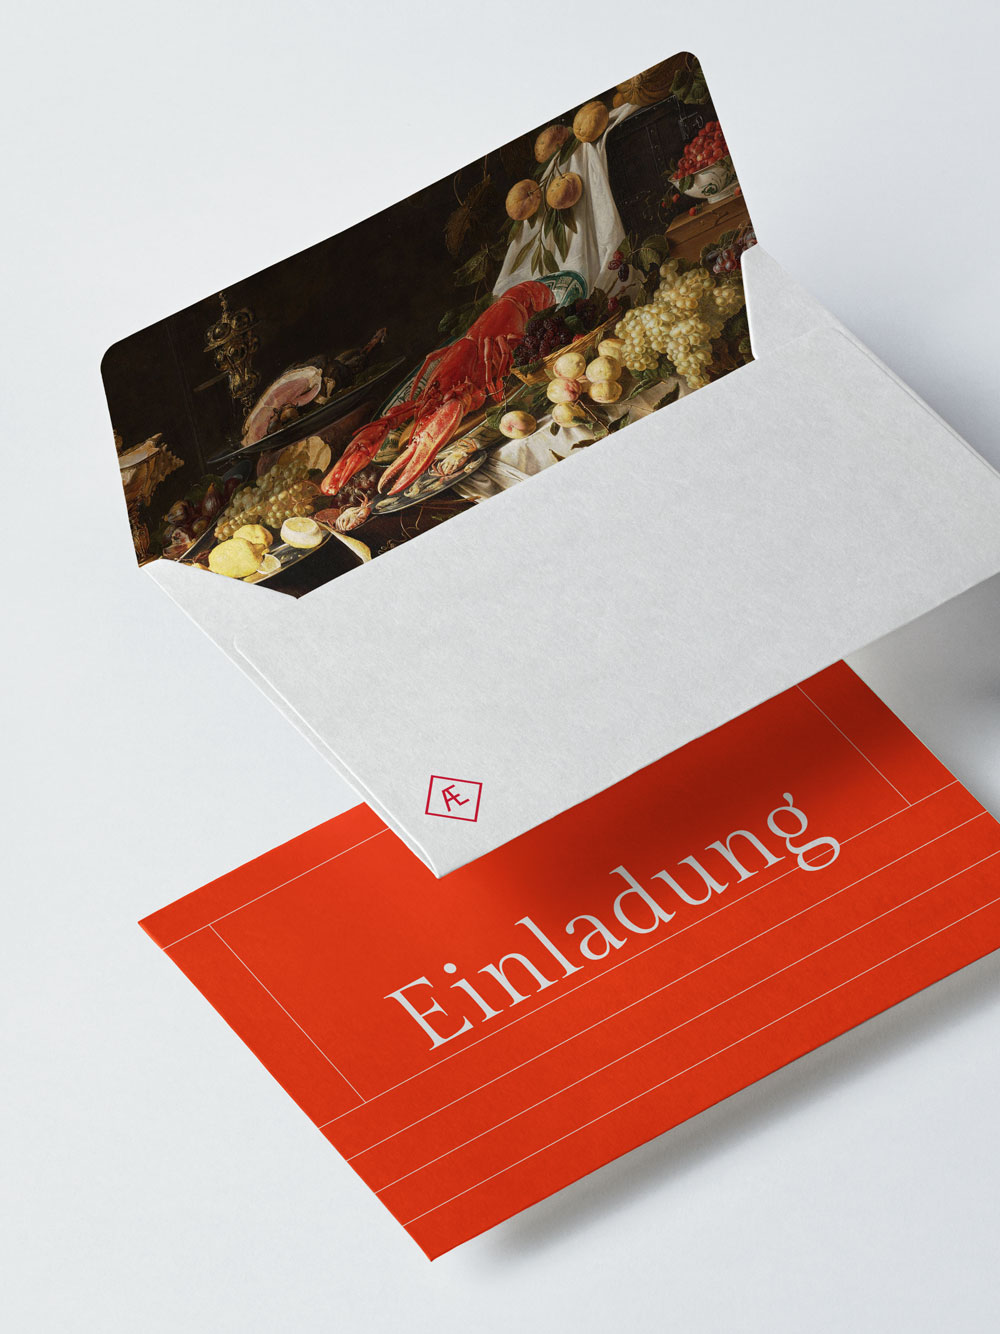 auf grauem Hintergrund schweben rote Karte mit hellgrauem Schriftzug Einladung, darüber offener grauer Briefumschlag